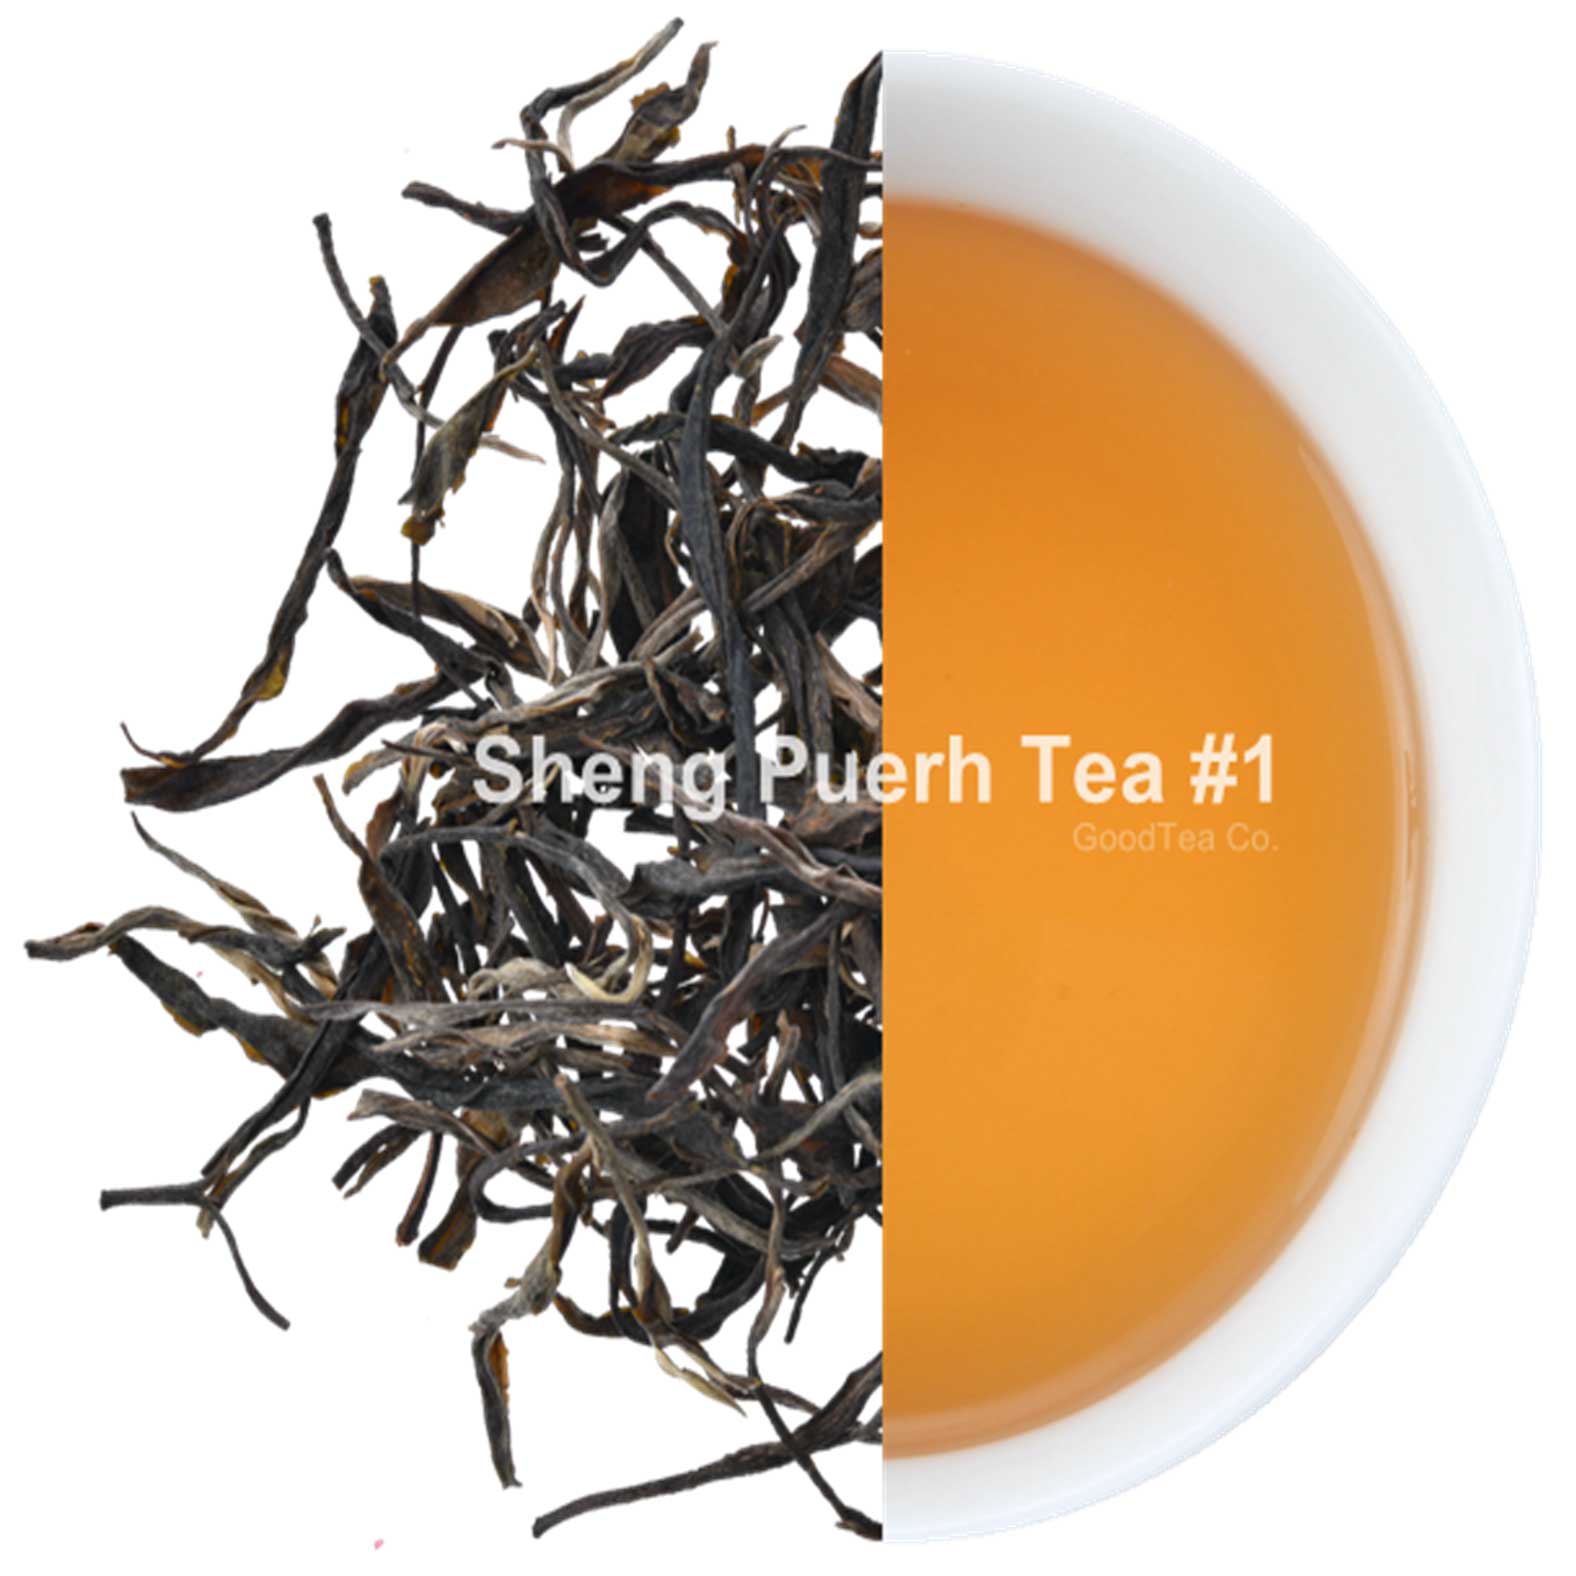 Sheng-(Raw)-Puerh-Tea-#1-5